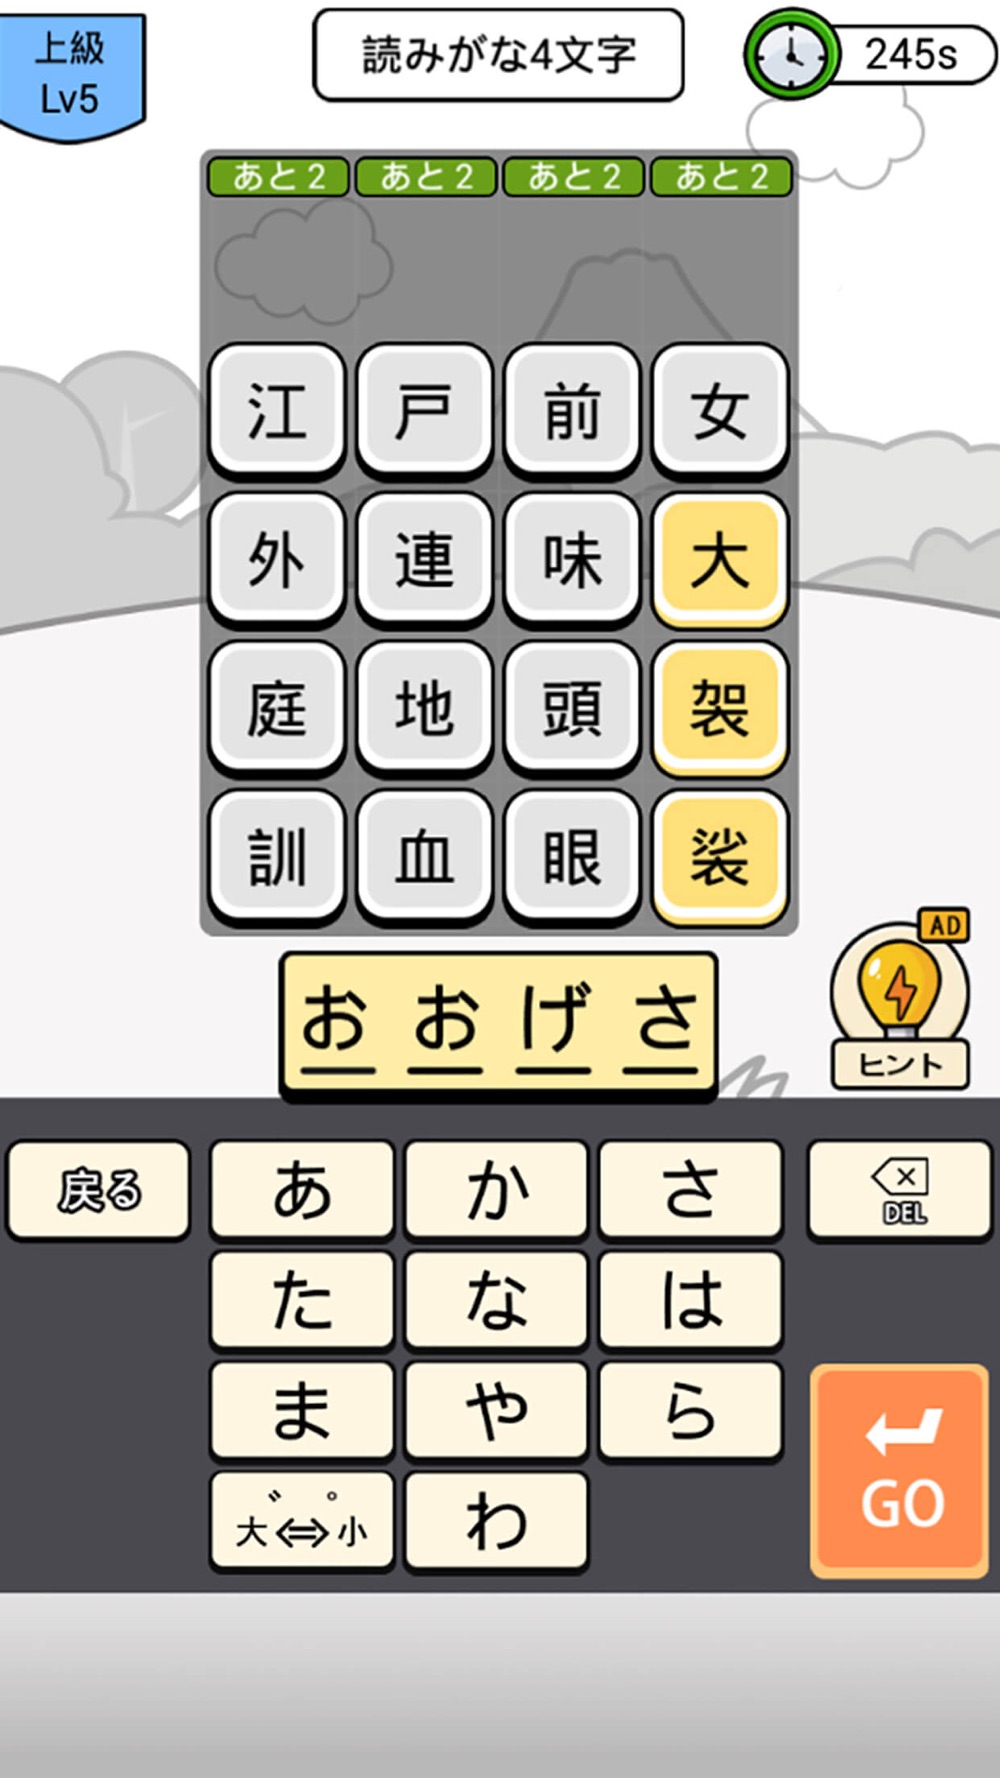 漢字クイズ 単語パズル 面白い言葉遊び Free Download App For Iphone Steprimo Com